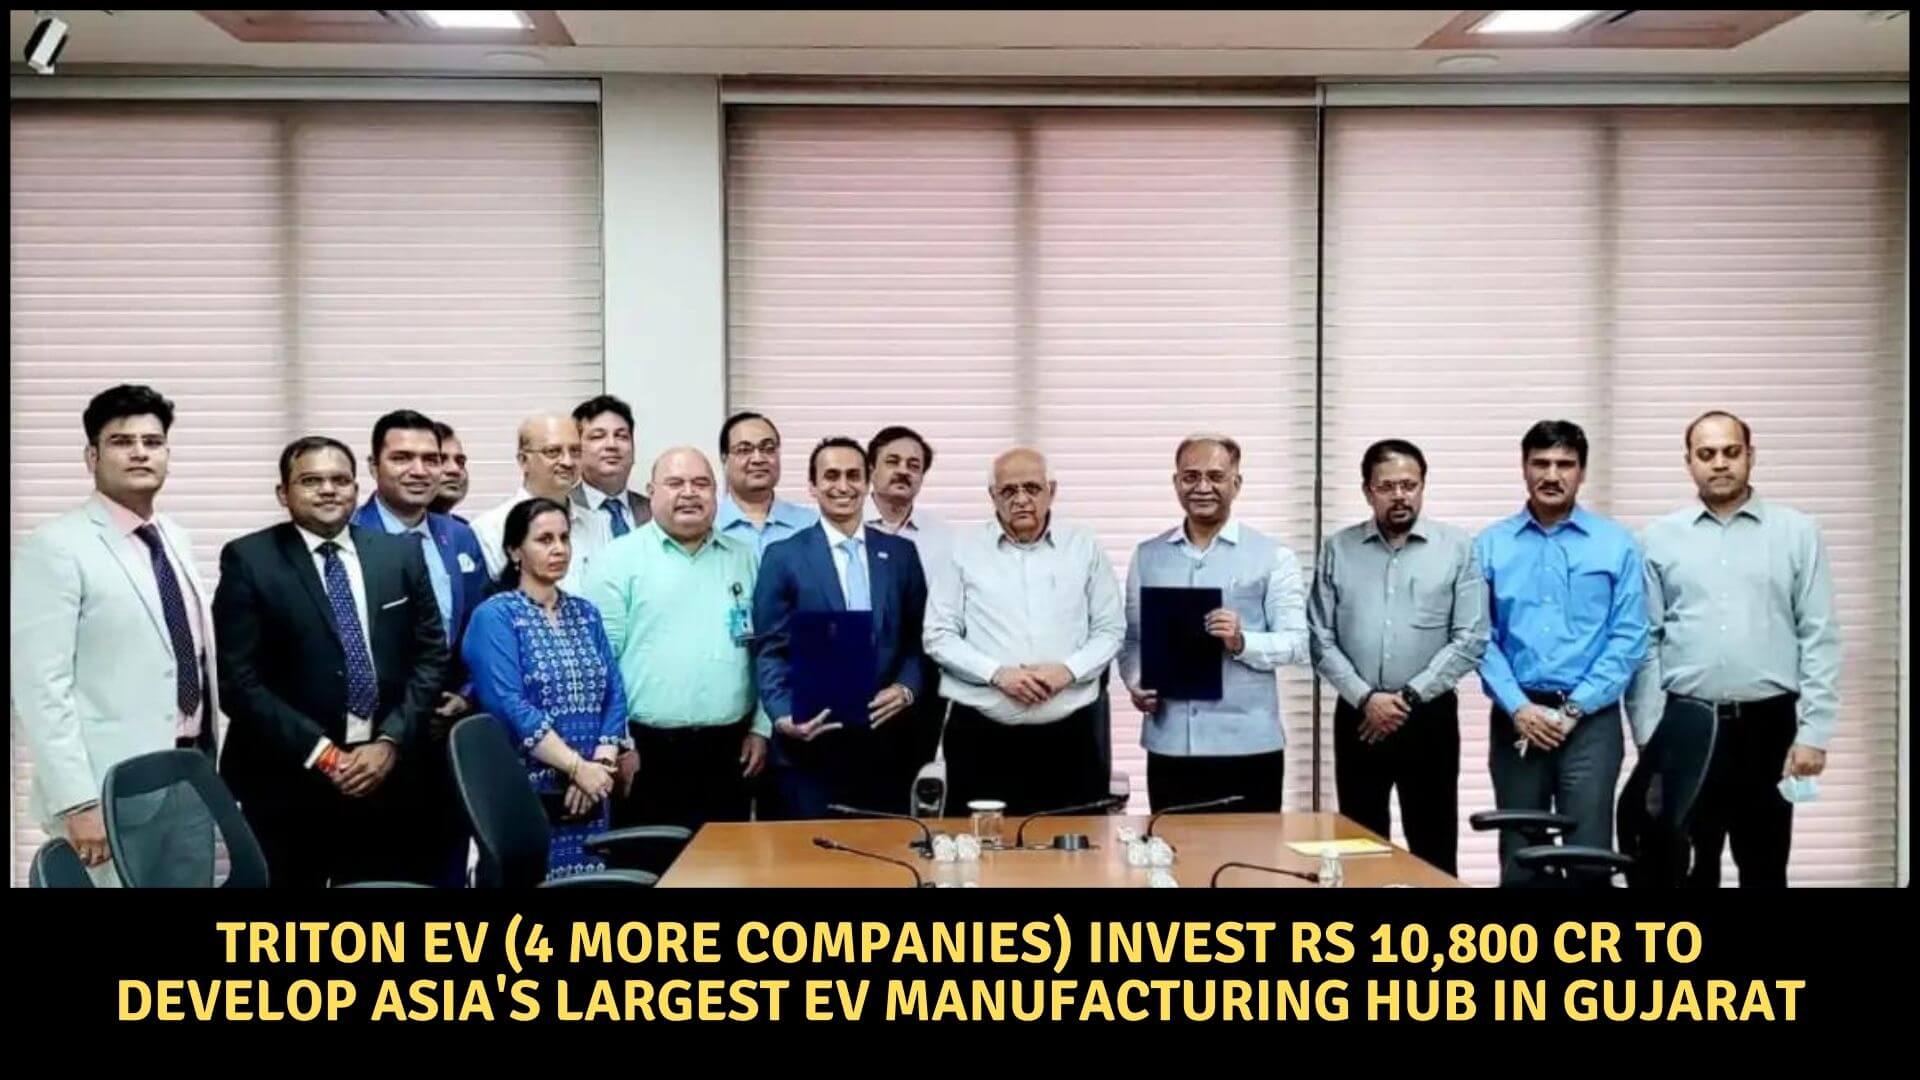 https://e-vehicleinfo.com/triton-ev-invest-develop-asia-largest-ev-manufacturing-hub-in-gujarat/